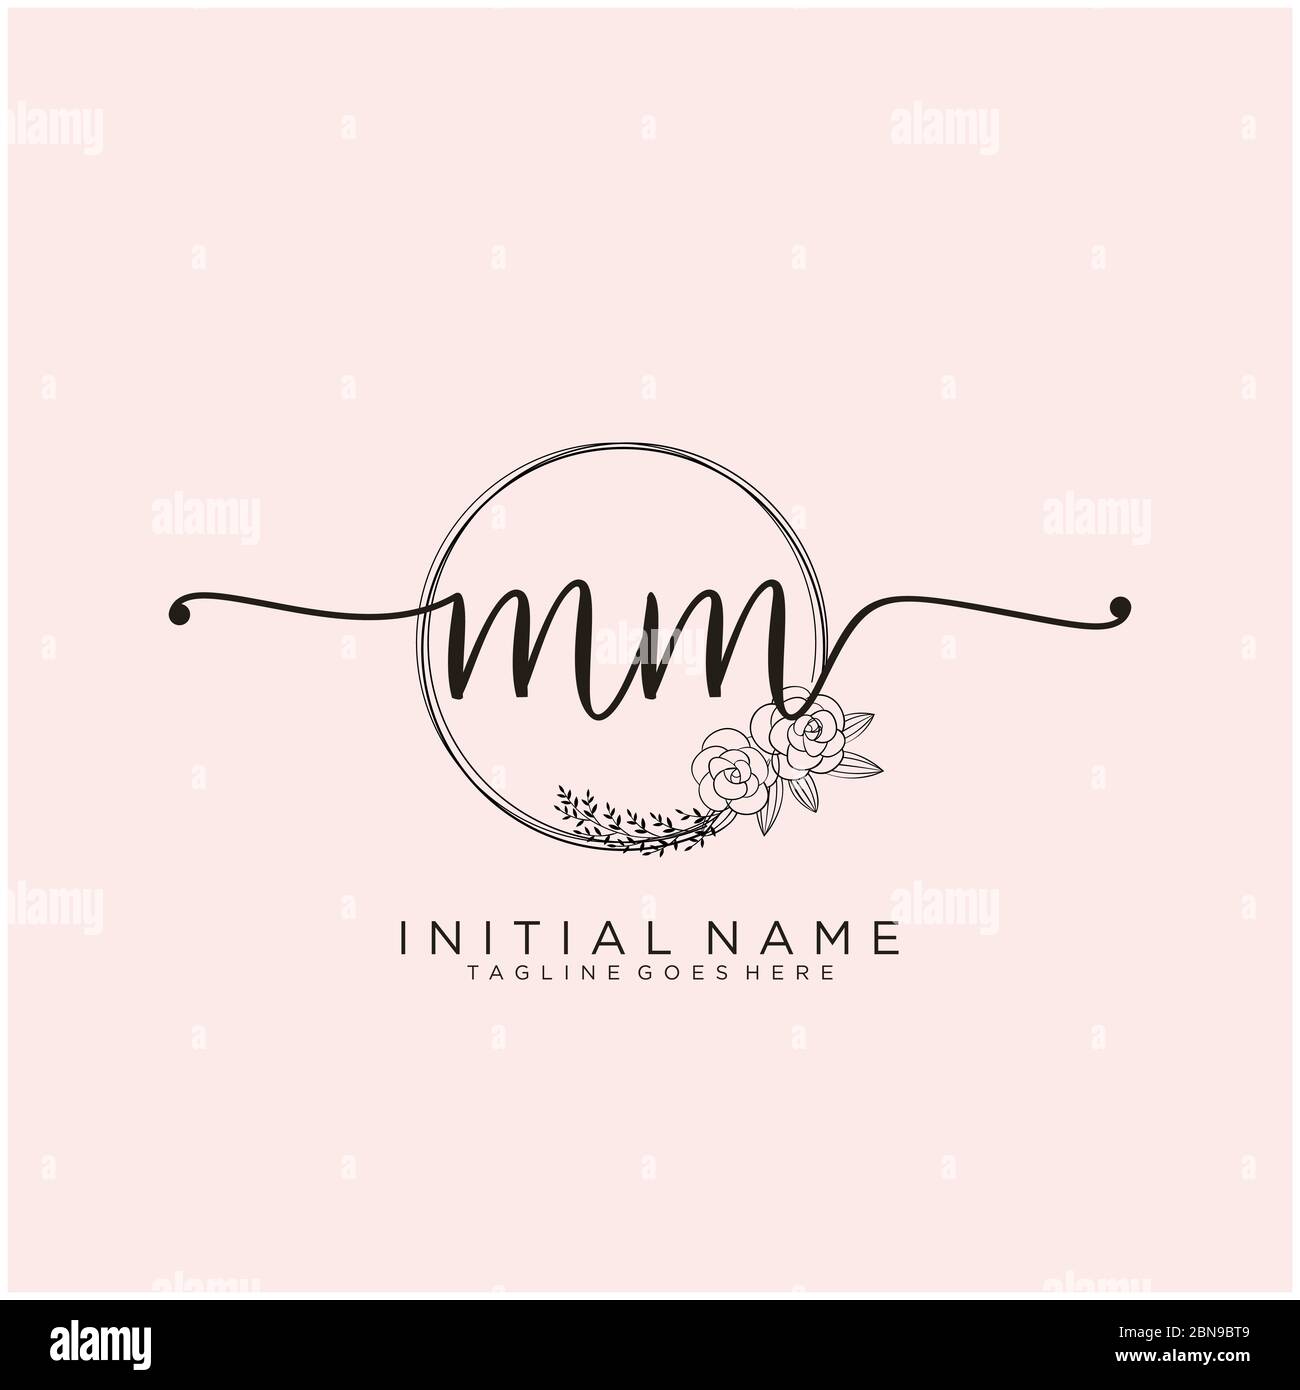 Initials Logo Design, MM – Elegant Quill